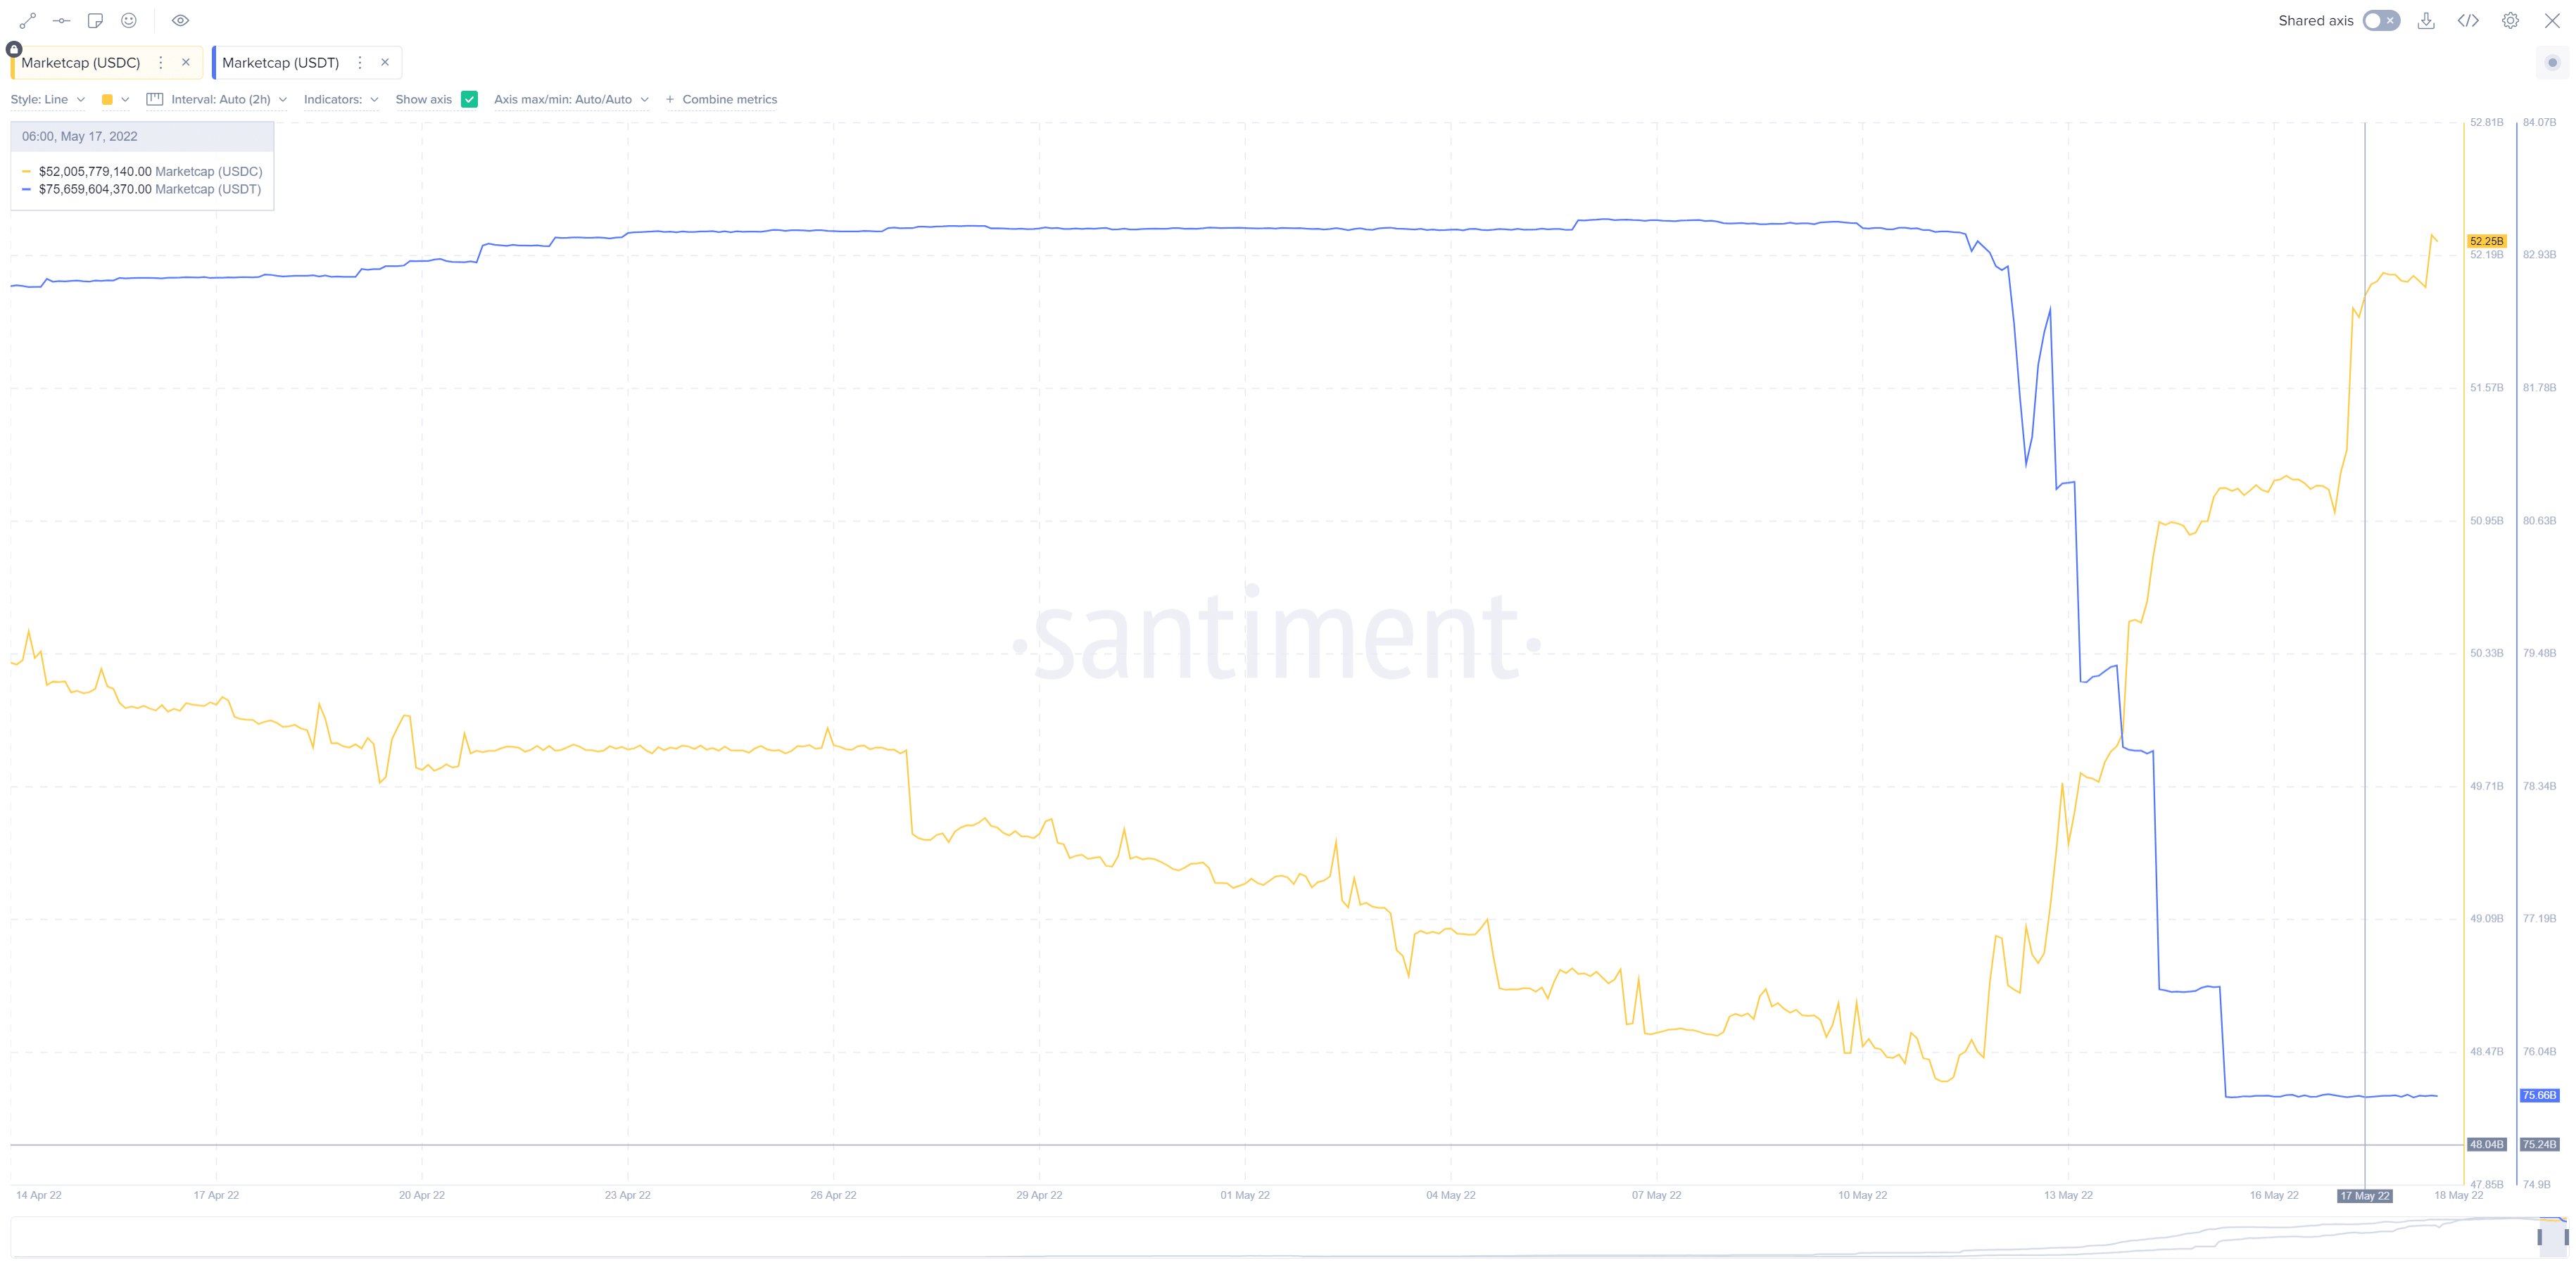 The Santiment chart featuring USDT vs USDC marketcap.